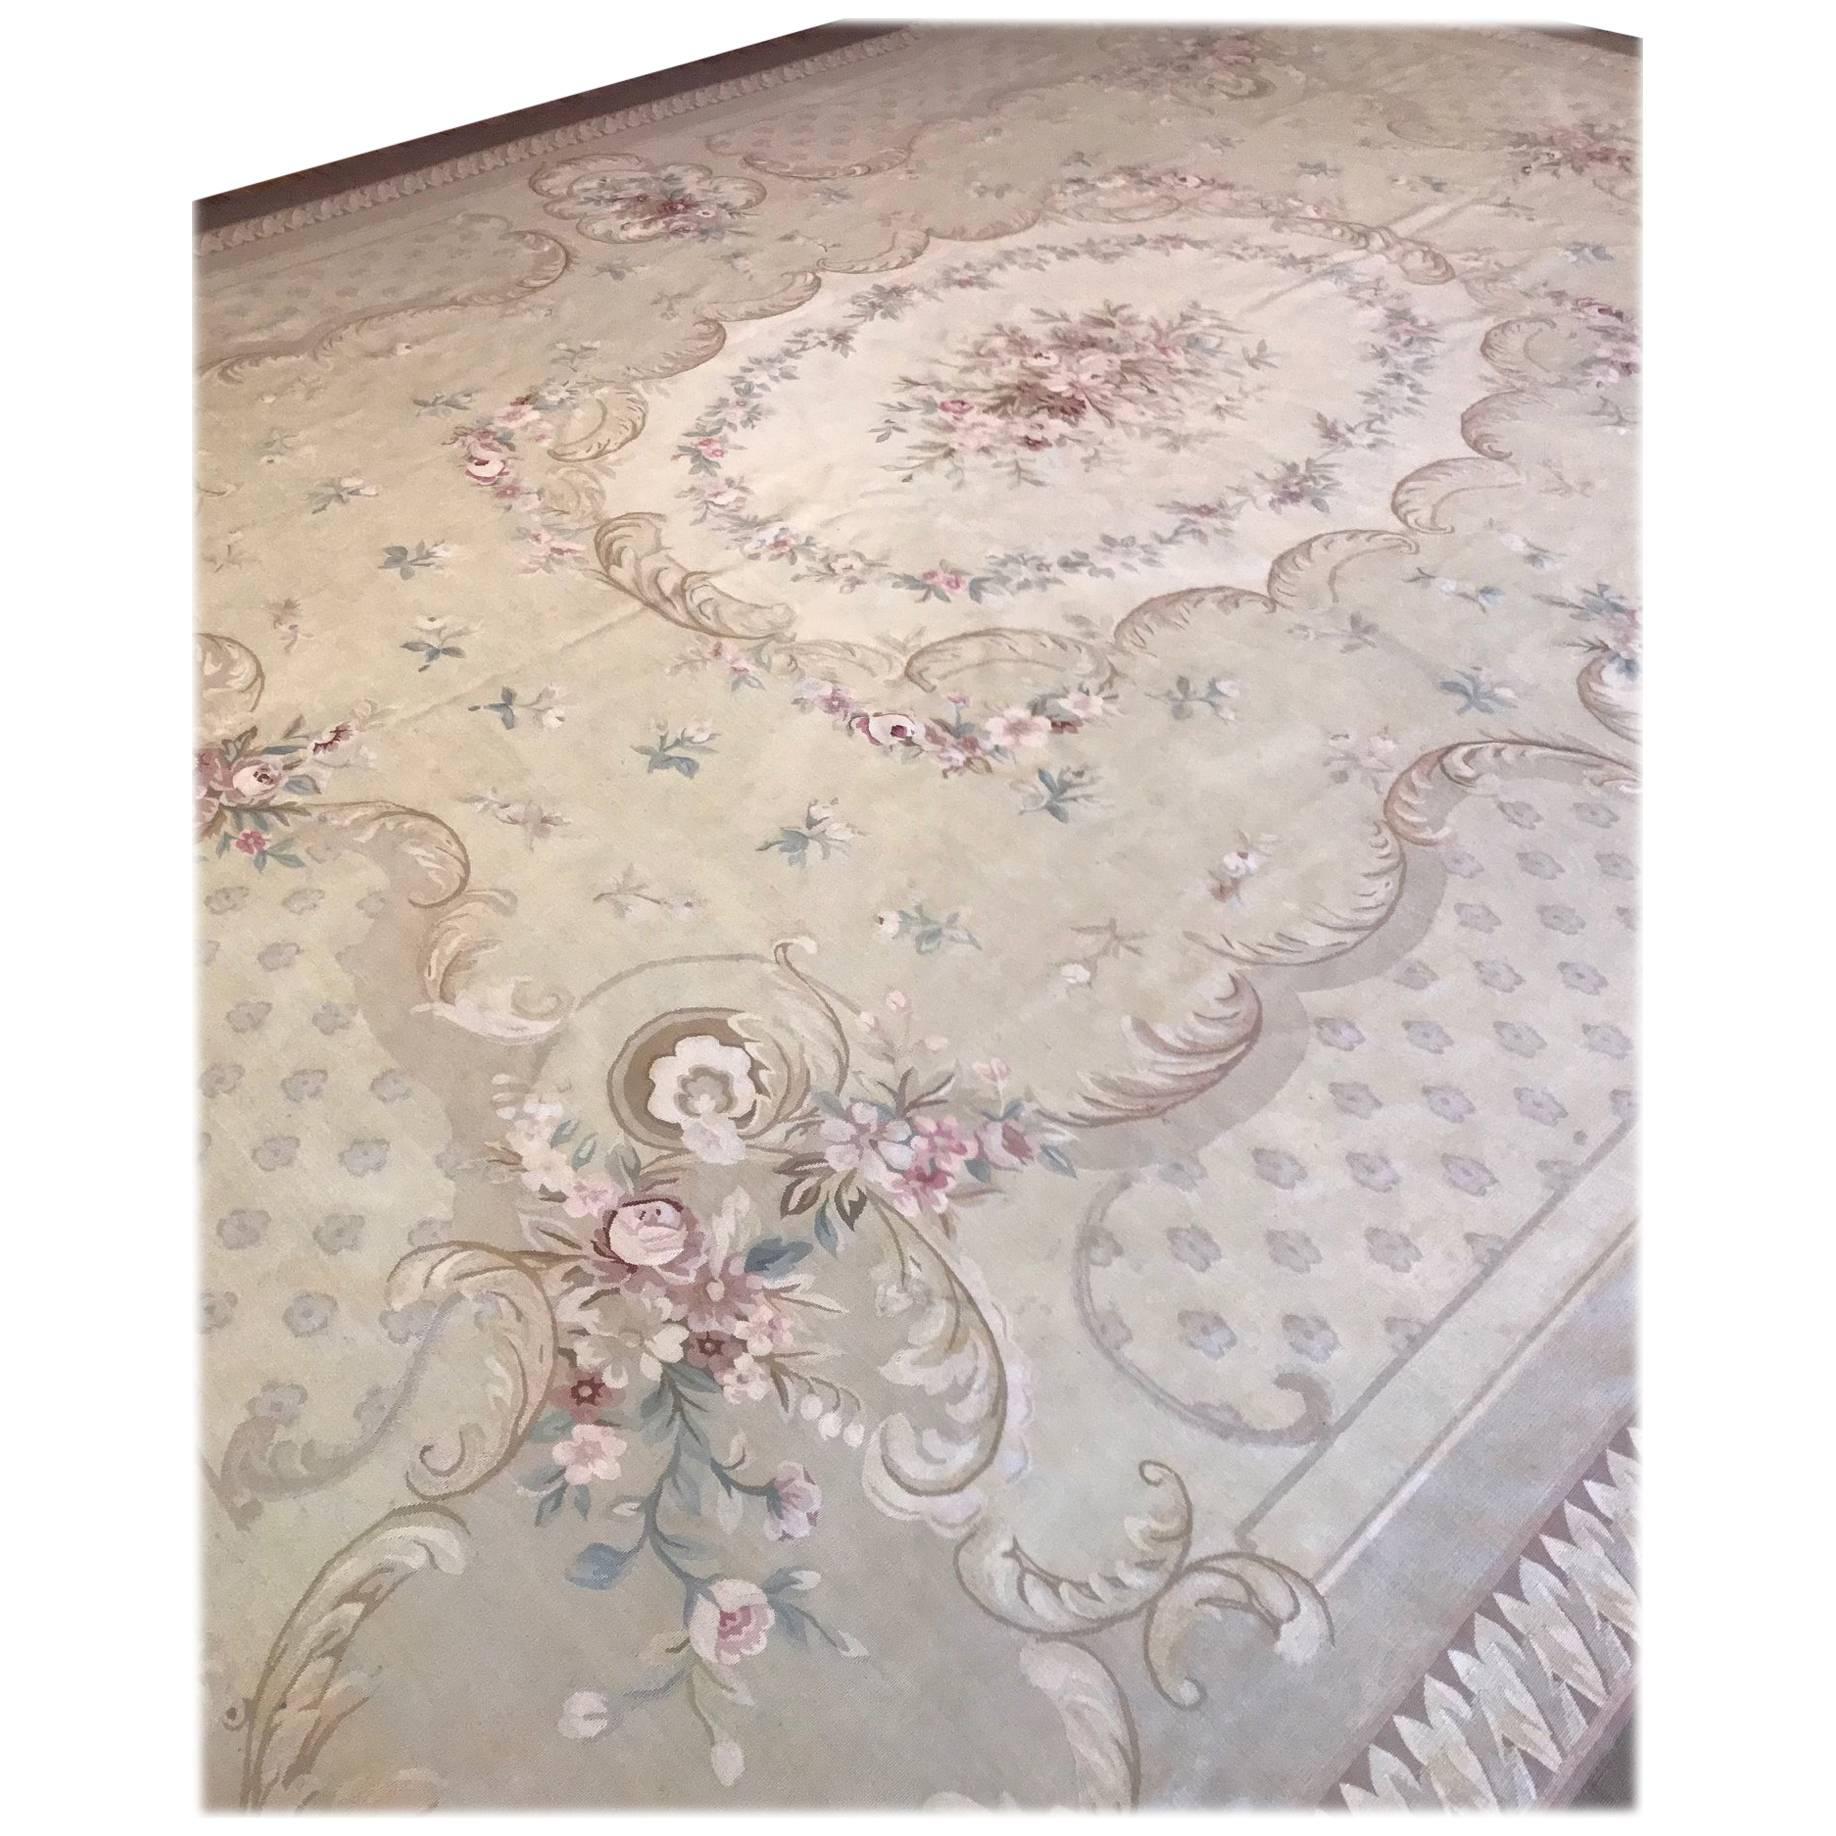 Antique French Aubusson Carpet